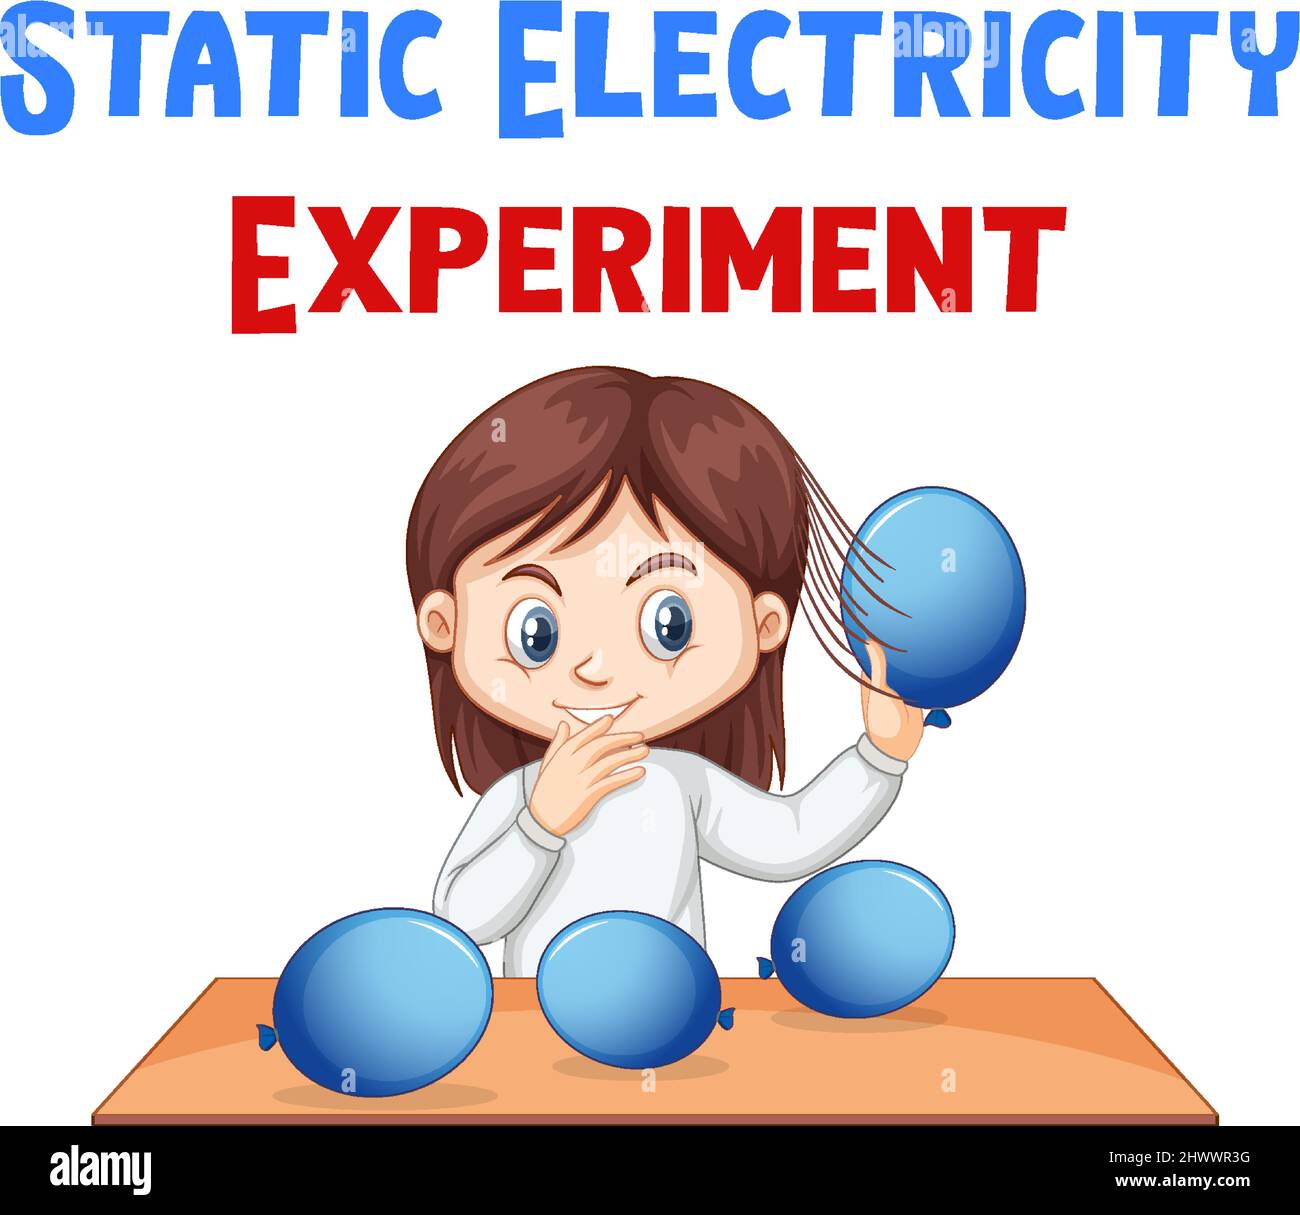 Statische Elektrizität Experiment mit Haaren und Ballons Illustration Stock Vektor